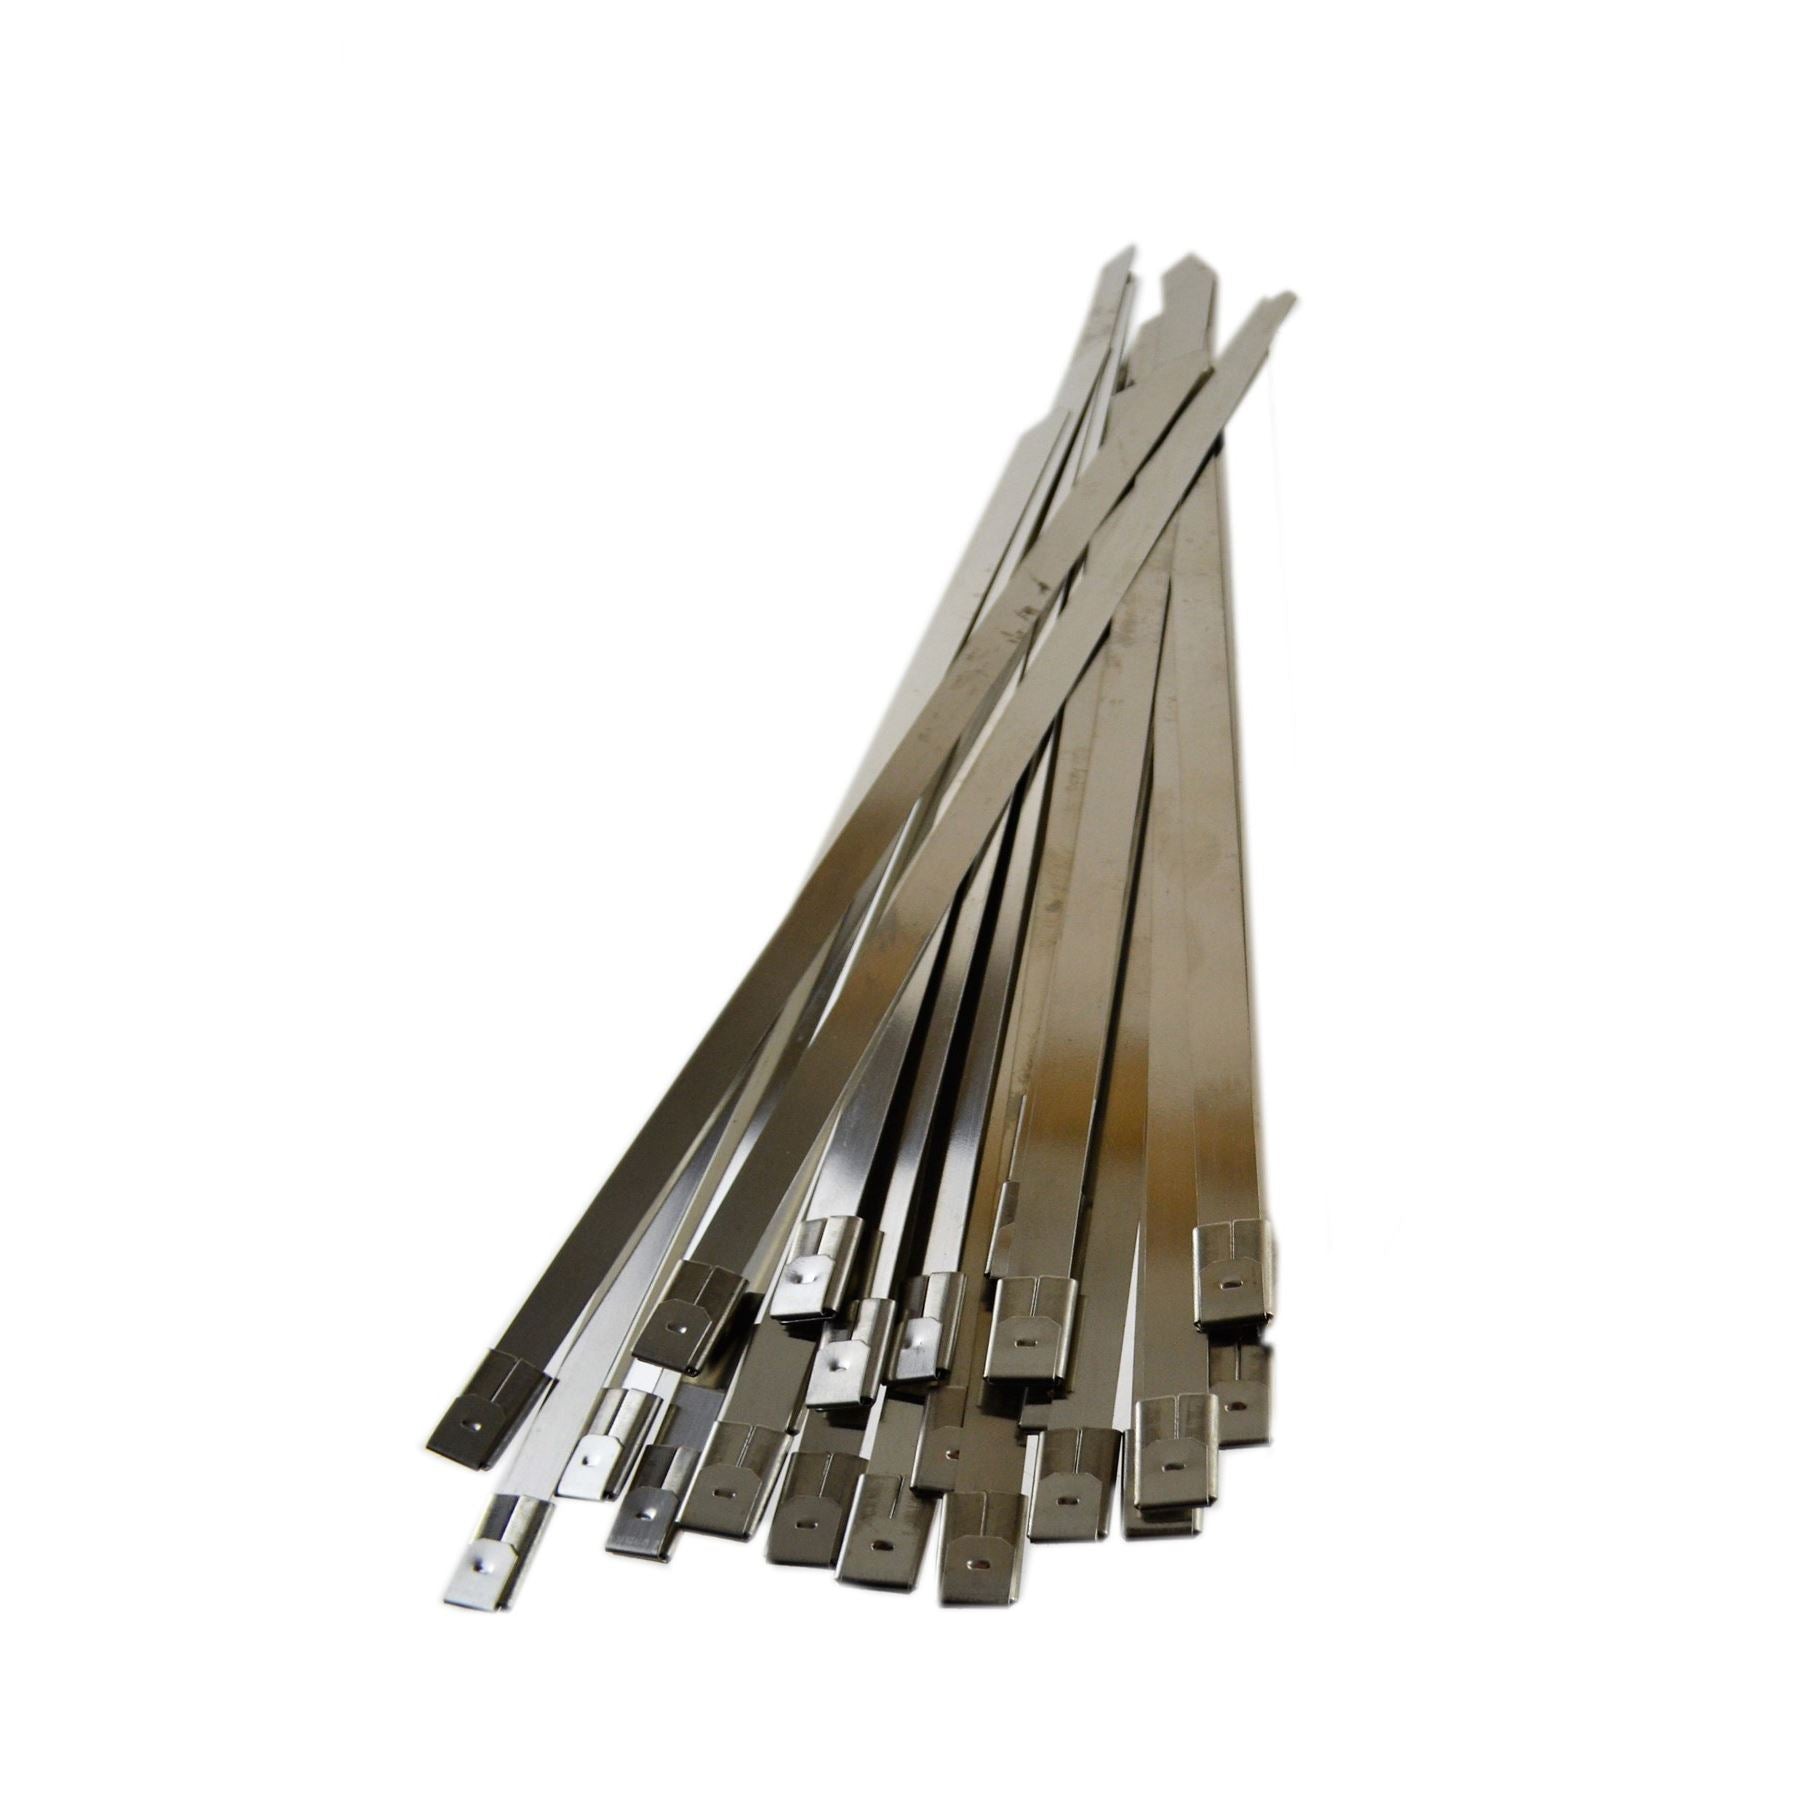 25pc Stainless Steel Metal Cable Ties Fasteners Zip Ties 200mm x 7.9mm Bergen